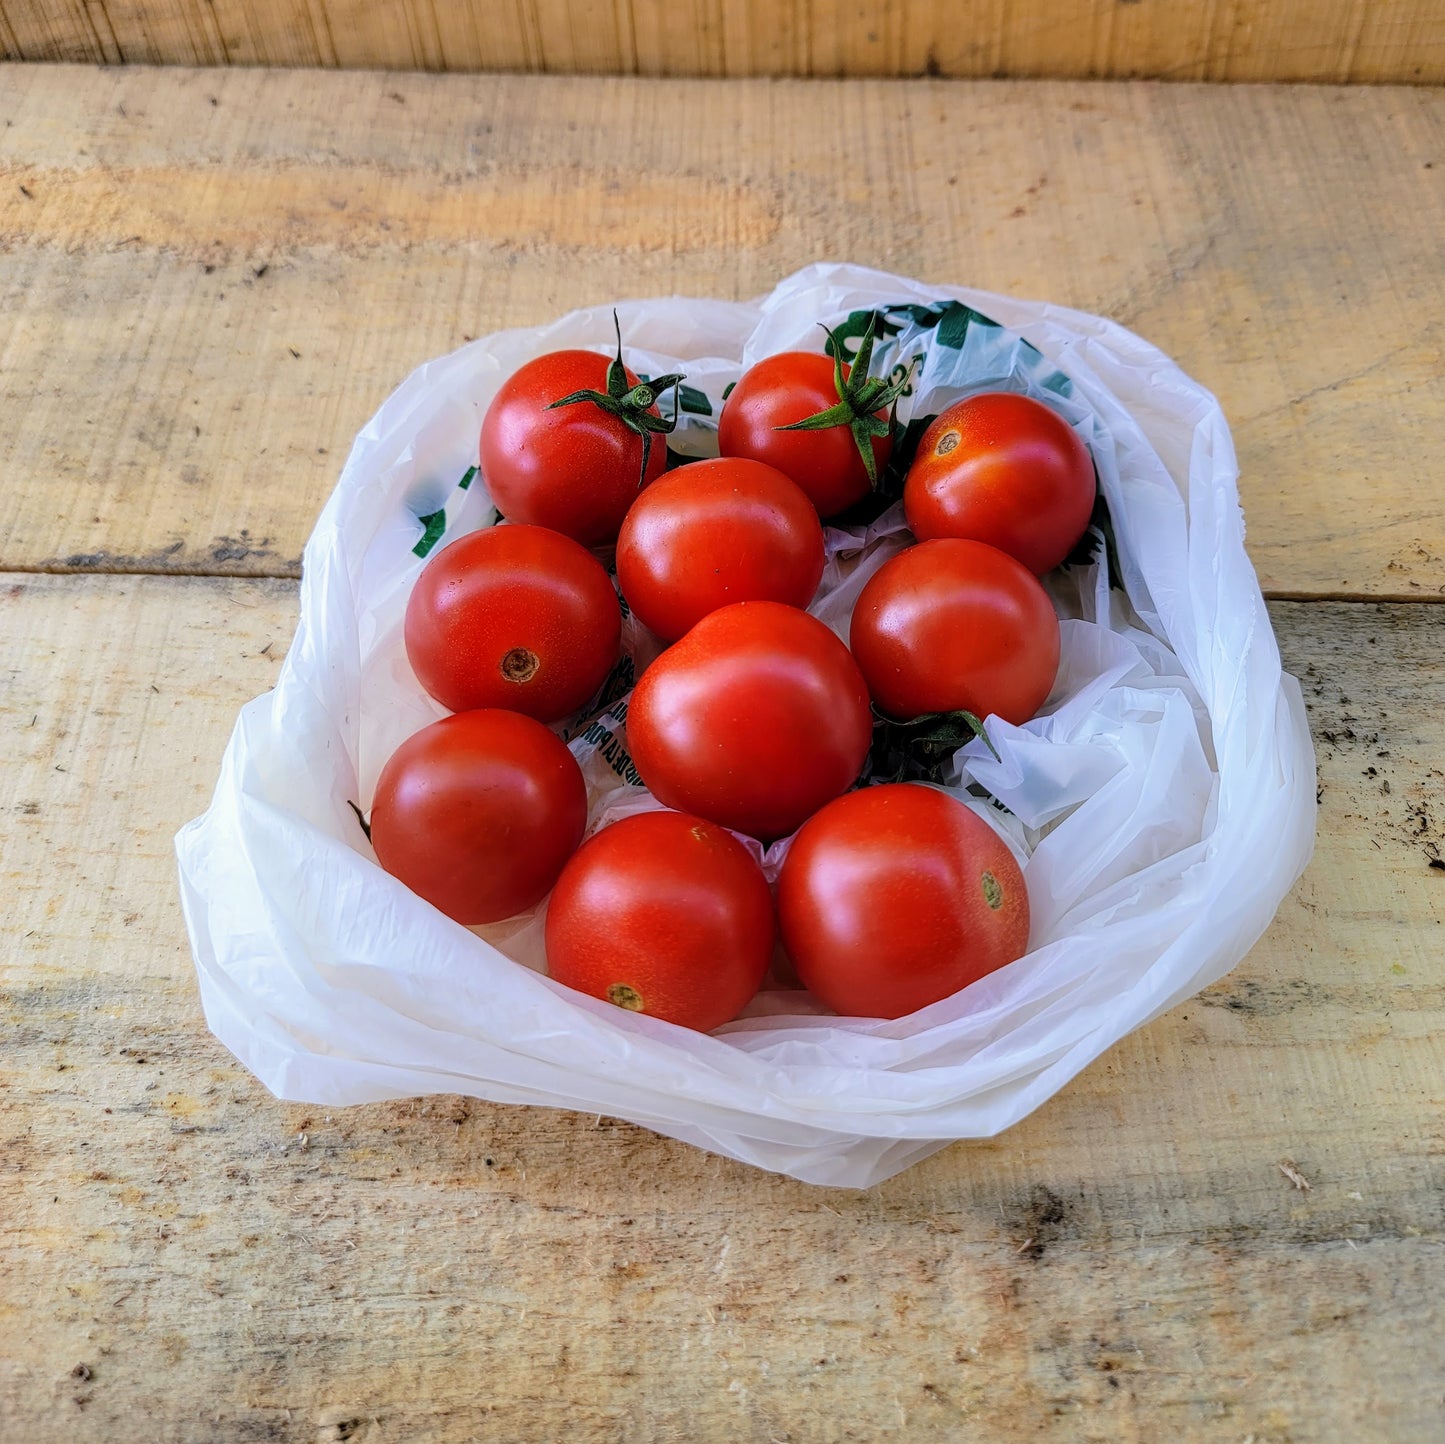 Cherry tomatoes - Organic